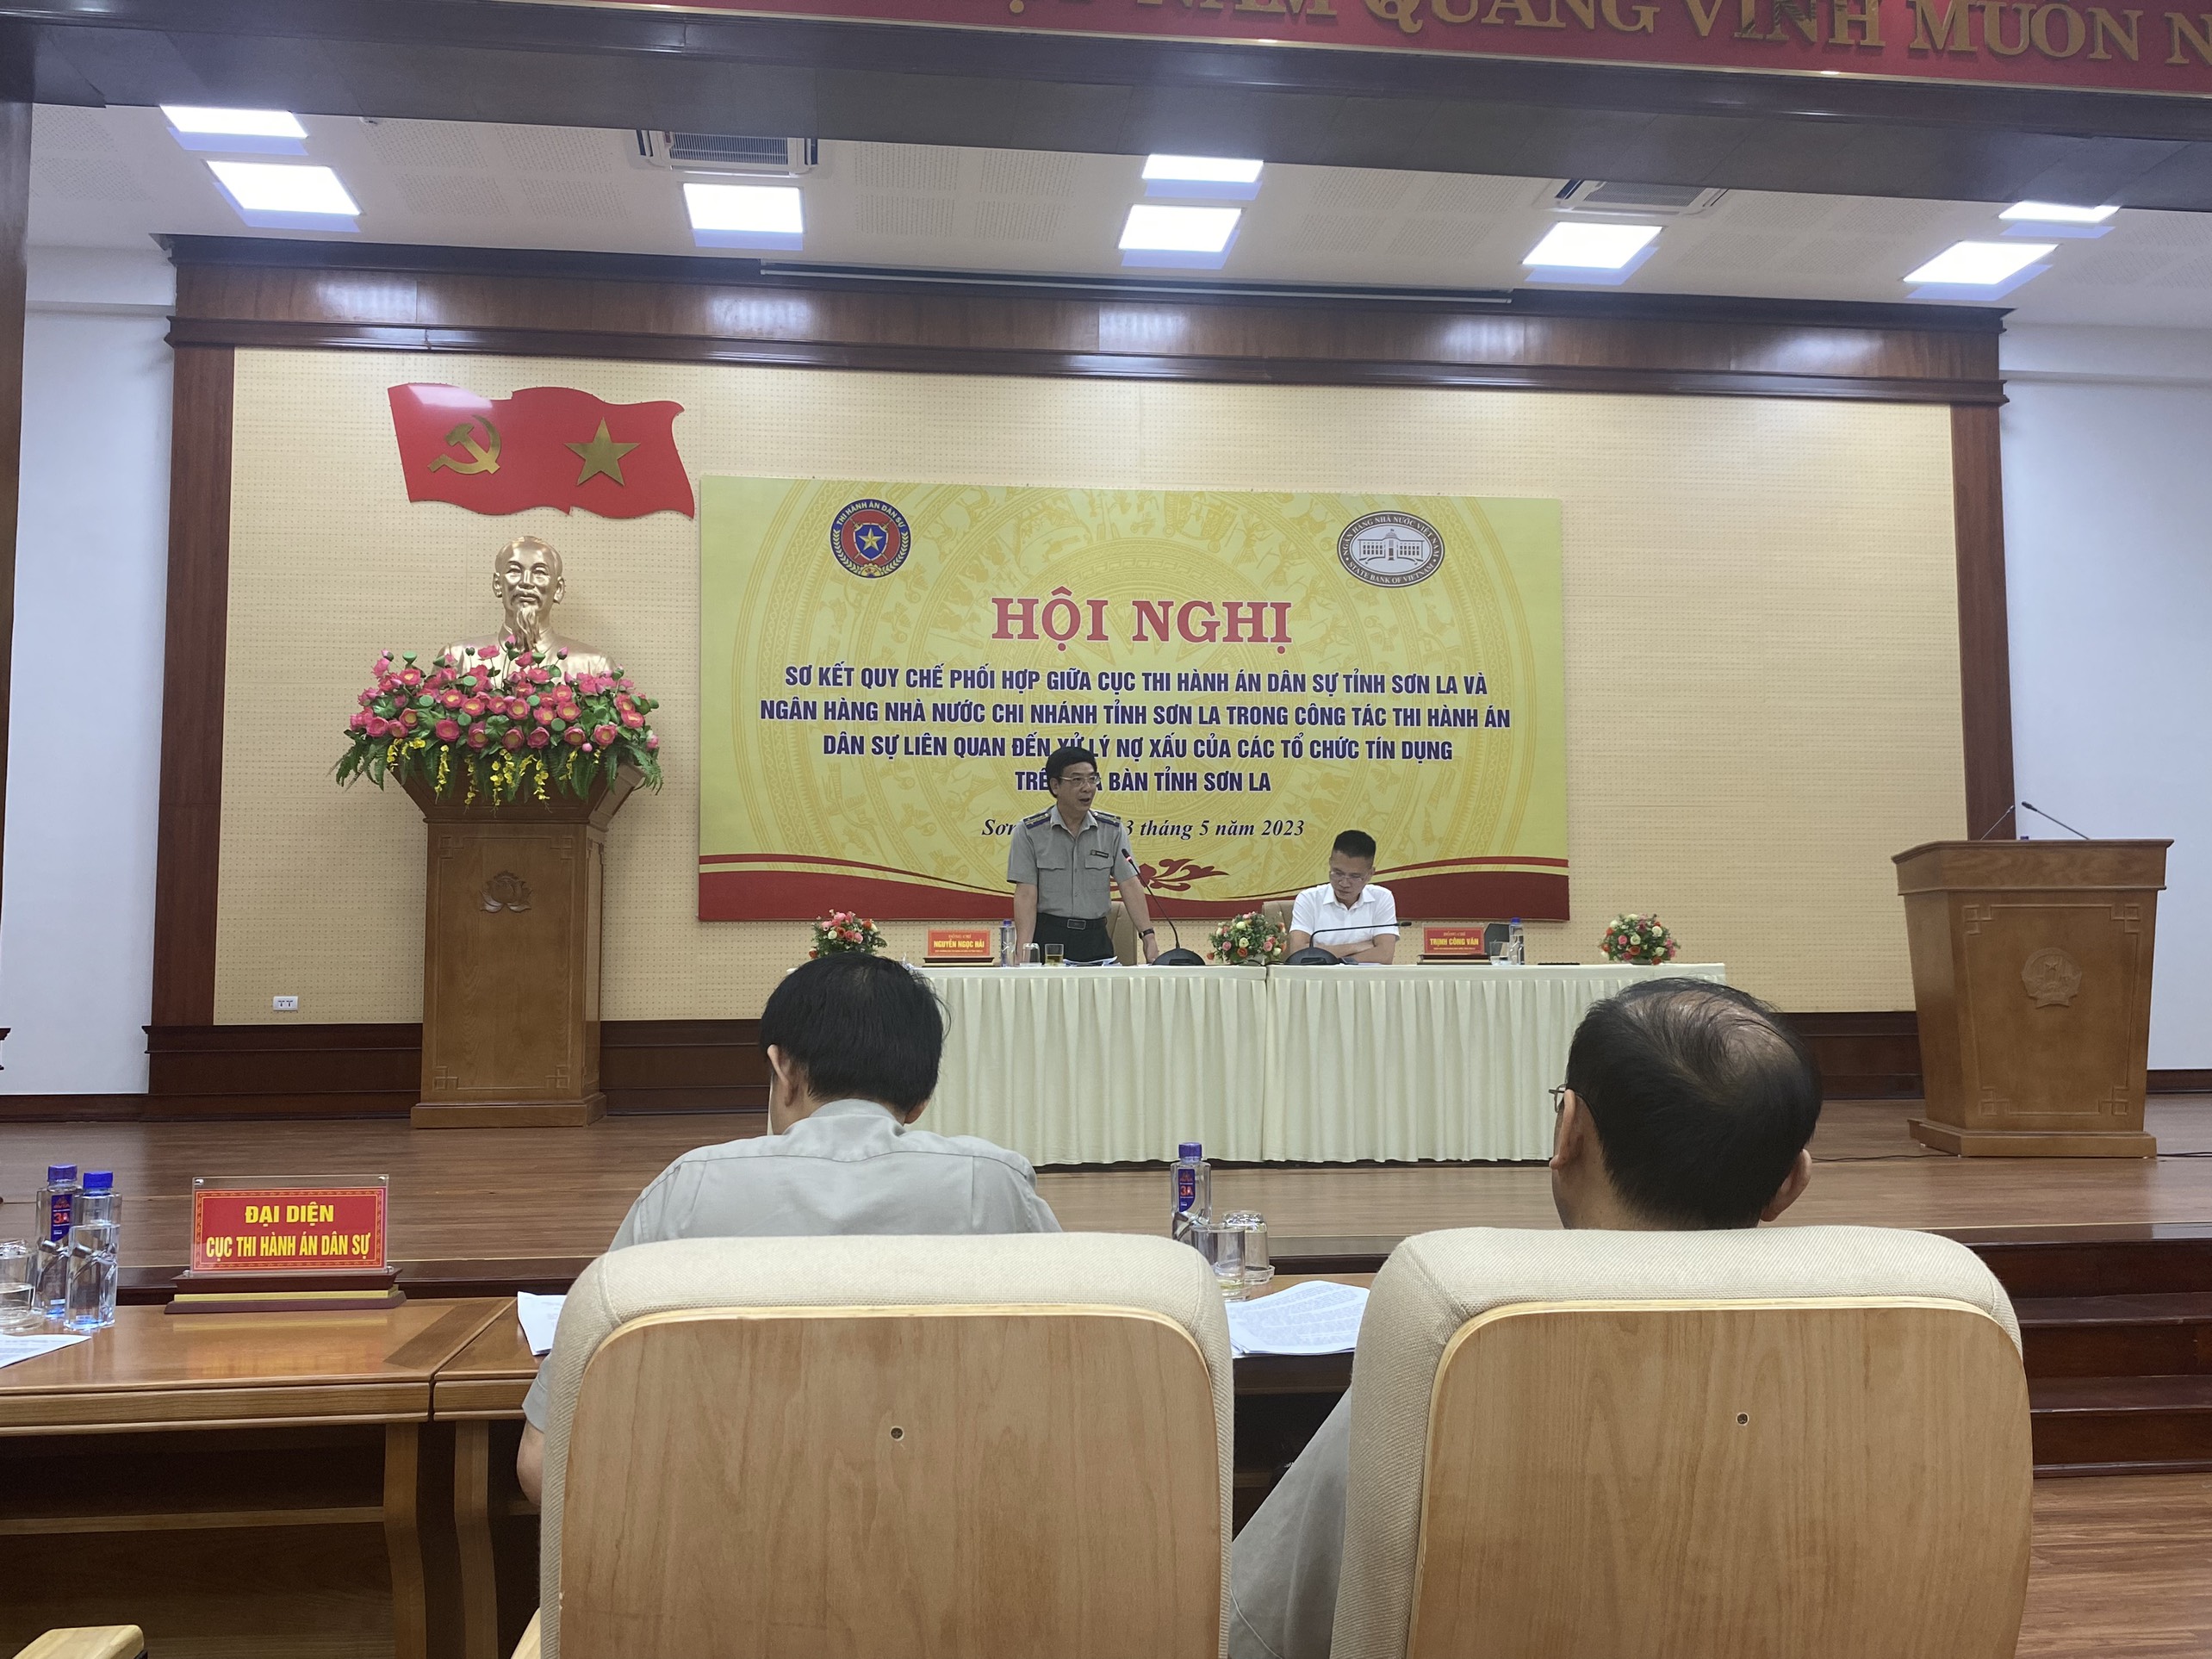 Cục THADS tỉnh phối hợp với NHNN Chi nhánh tỉnh Sơn La tổ chức hội nghị sơ kết thực hiện quy chế phối hợp 13